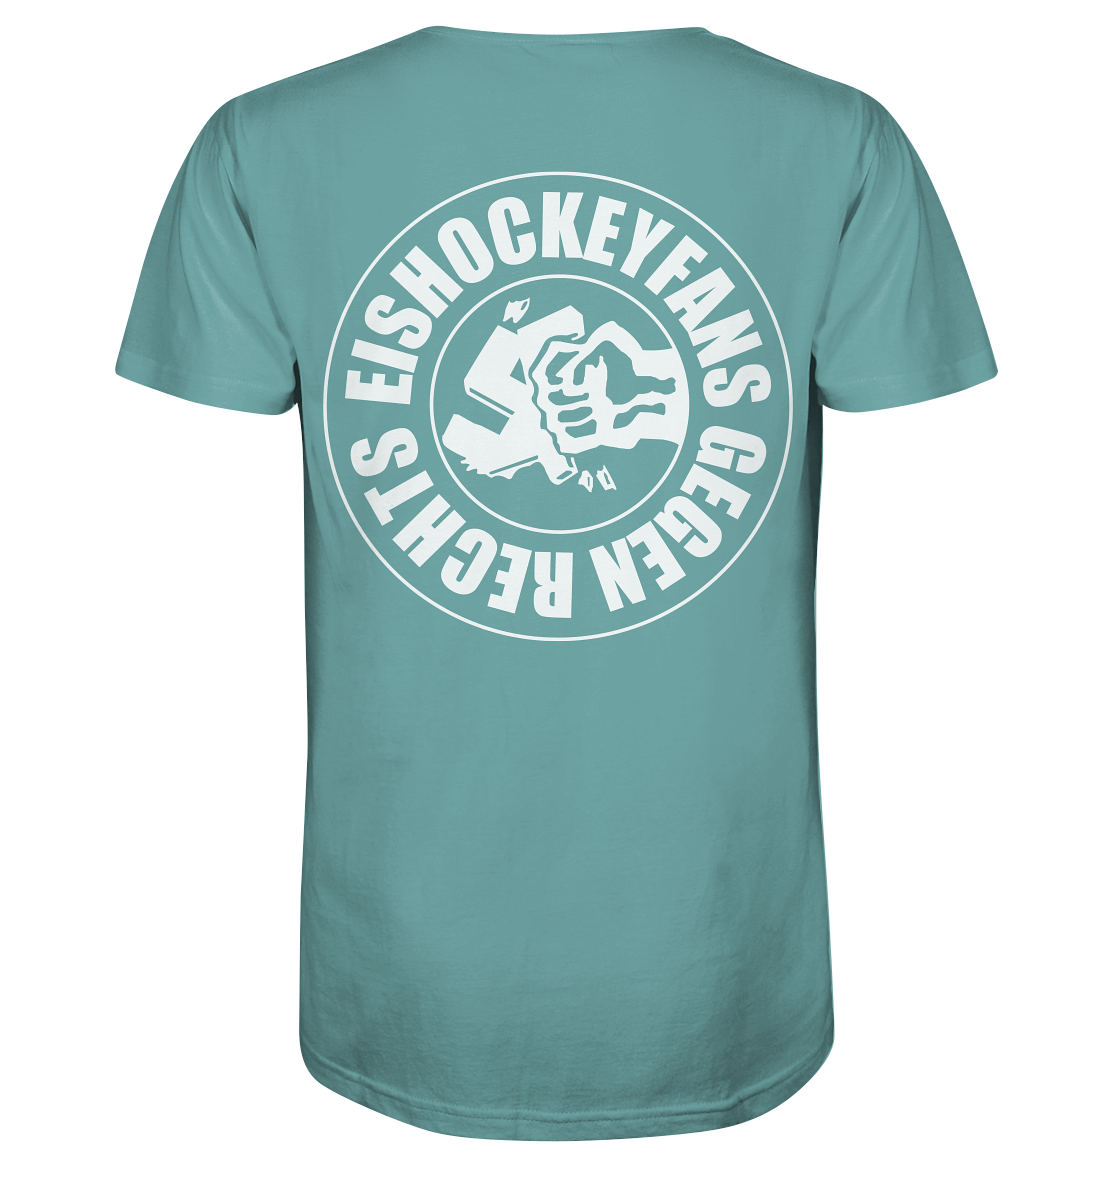 N.O.S.W. BLOCK Gegen Rechts Shirt "EISHOCKEYFANS GEGEN RECHTS" beidseitig bedrucktes Männer Organic T-Shirt citadel blue